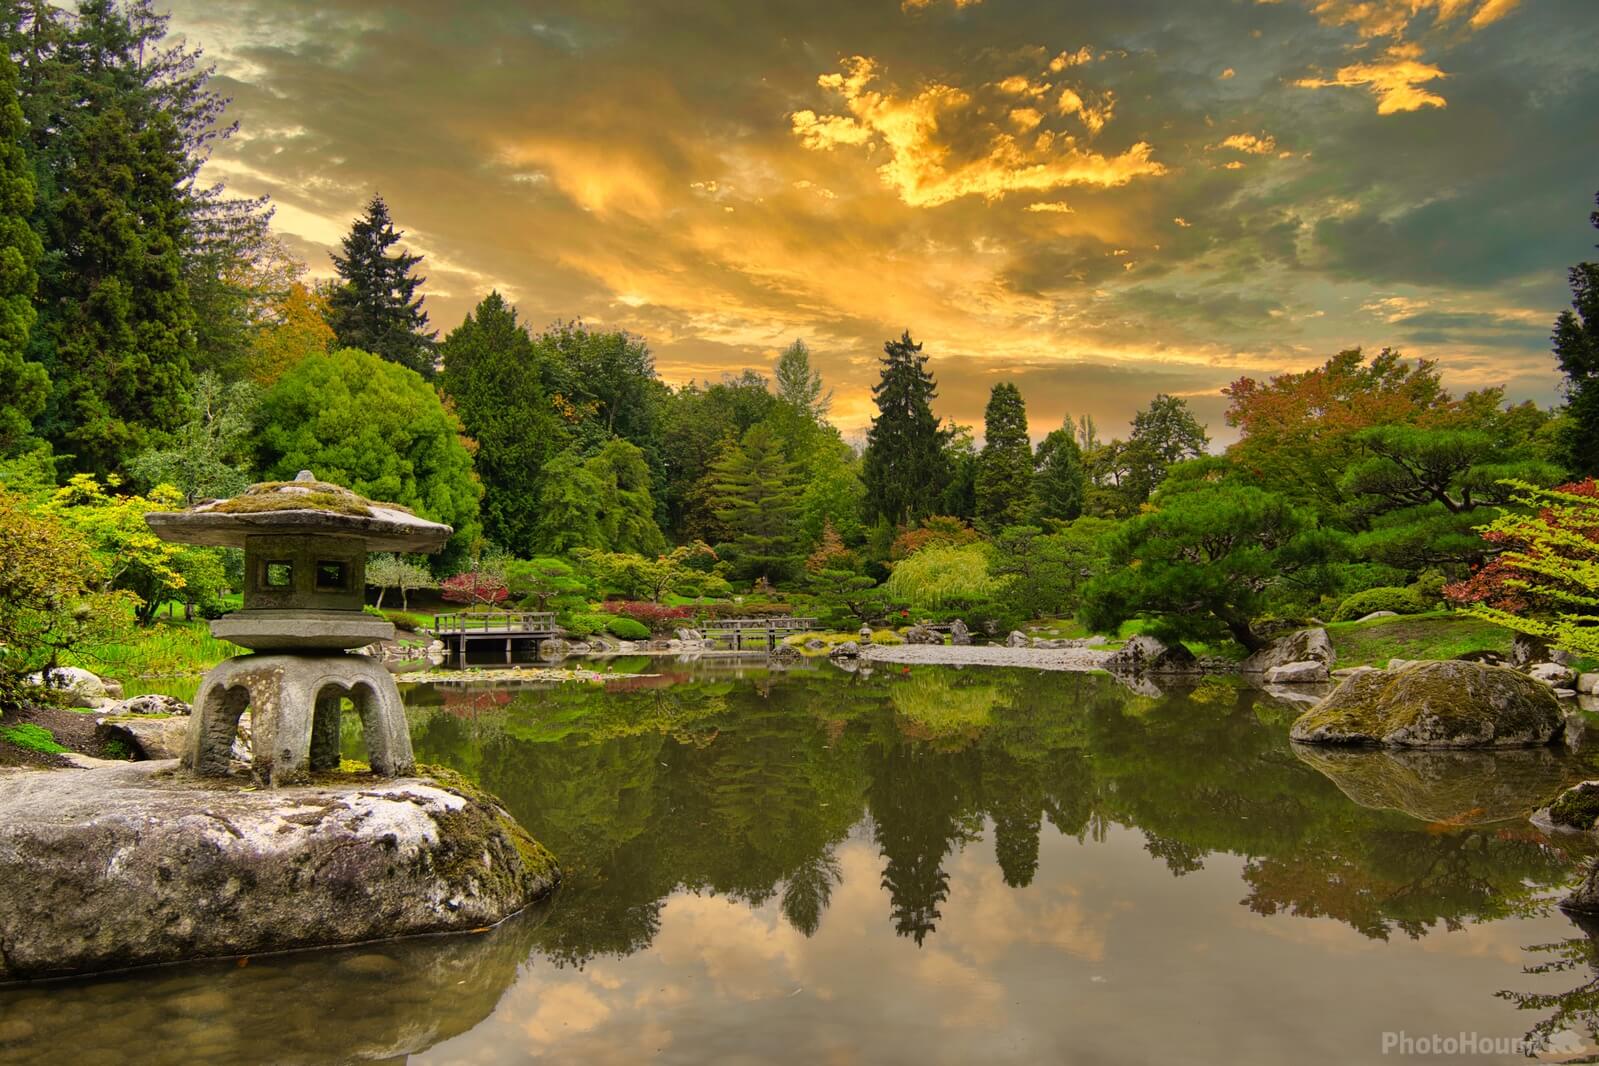 Image of Washington Park Arboretum by Steve West